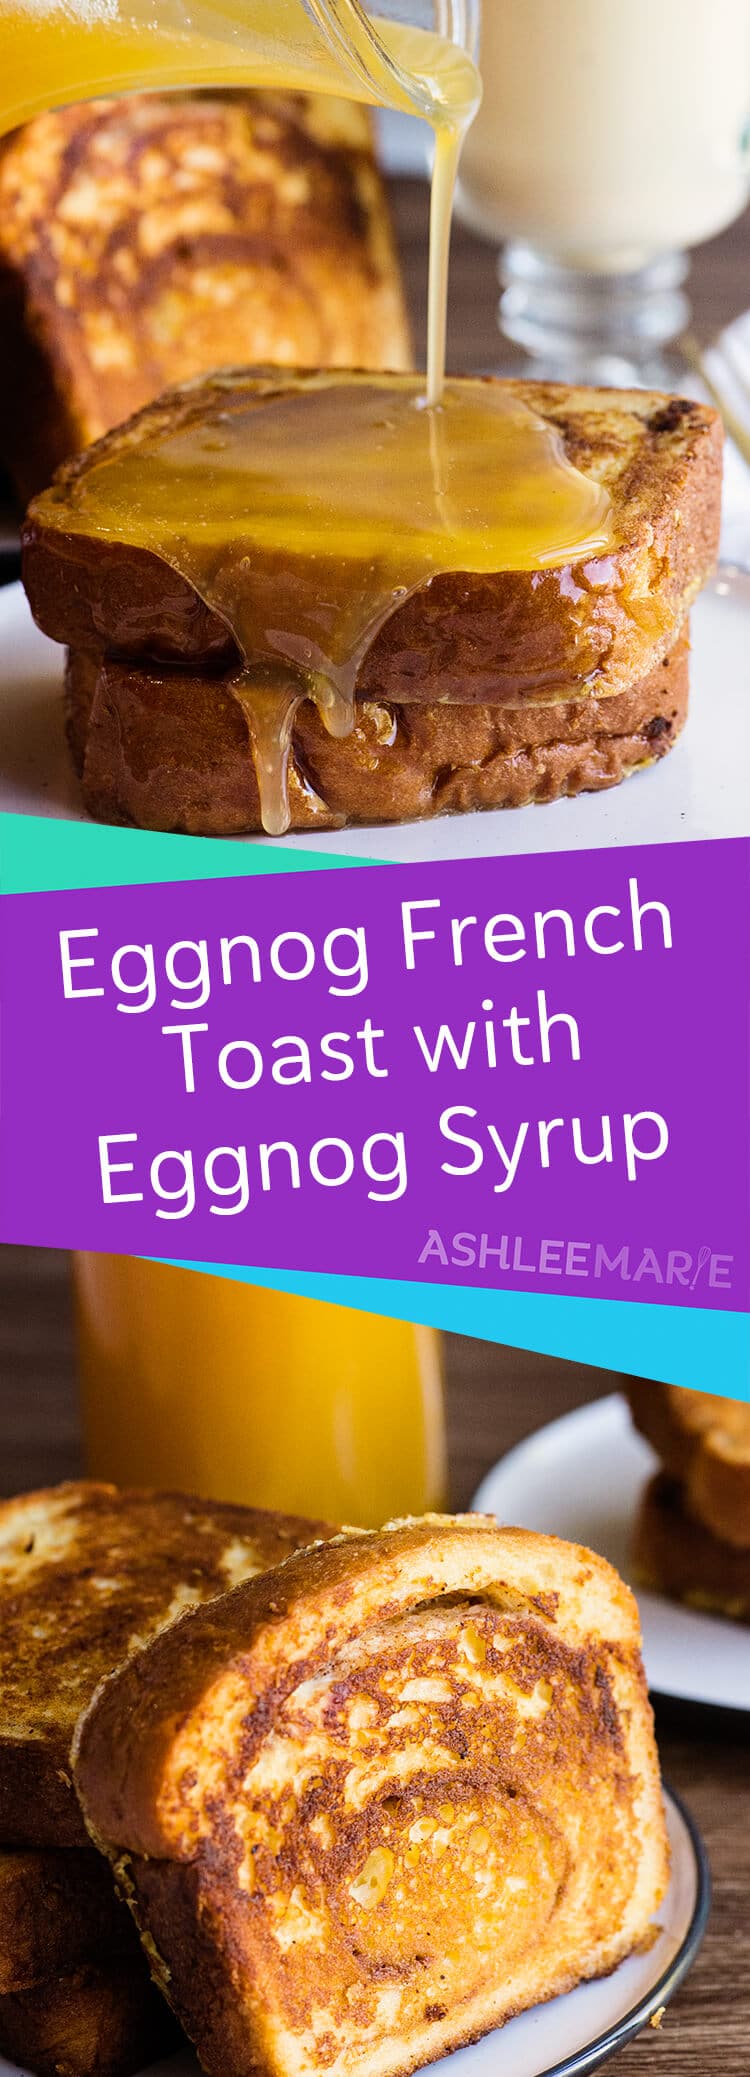 eggnog french toast recipe with homemade eggnog syrup